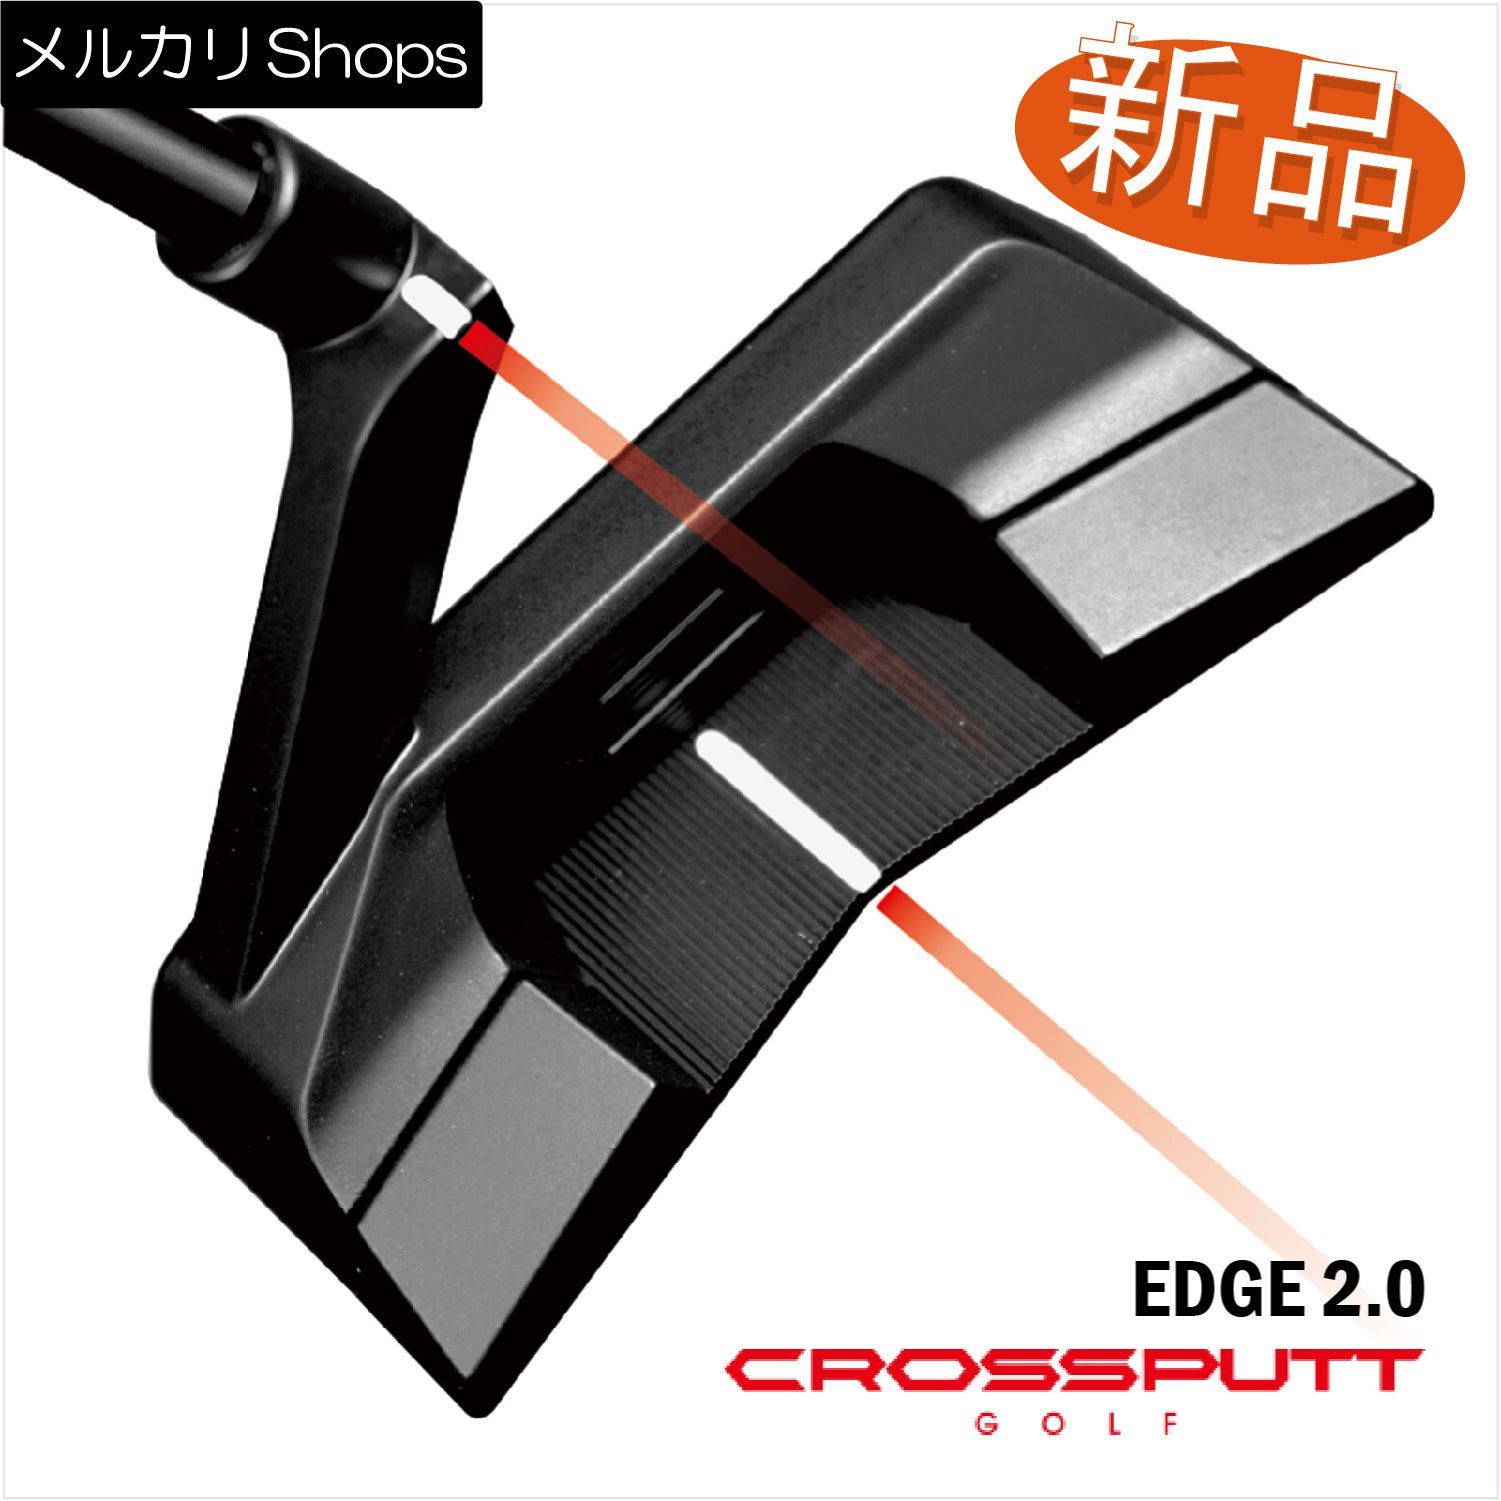 クロスパットCROSSPUTT (クロスパット) Edge1.0 33インチ - クラブ